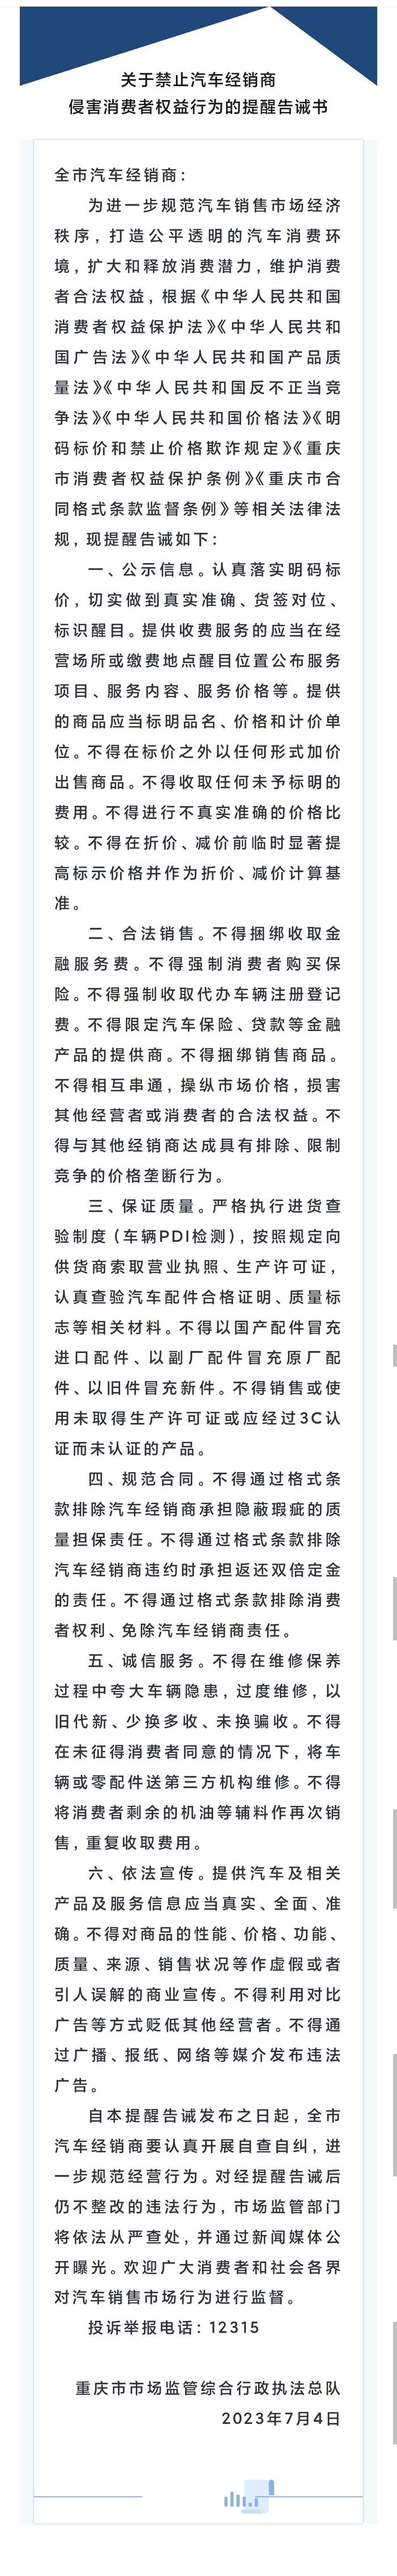 重庆市市场监管综合行政执法总队向全市汽车经销商发布关于禁止汽车经销商侵害消费者权益行为的提醒告诫书